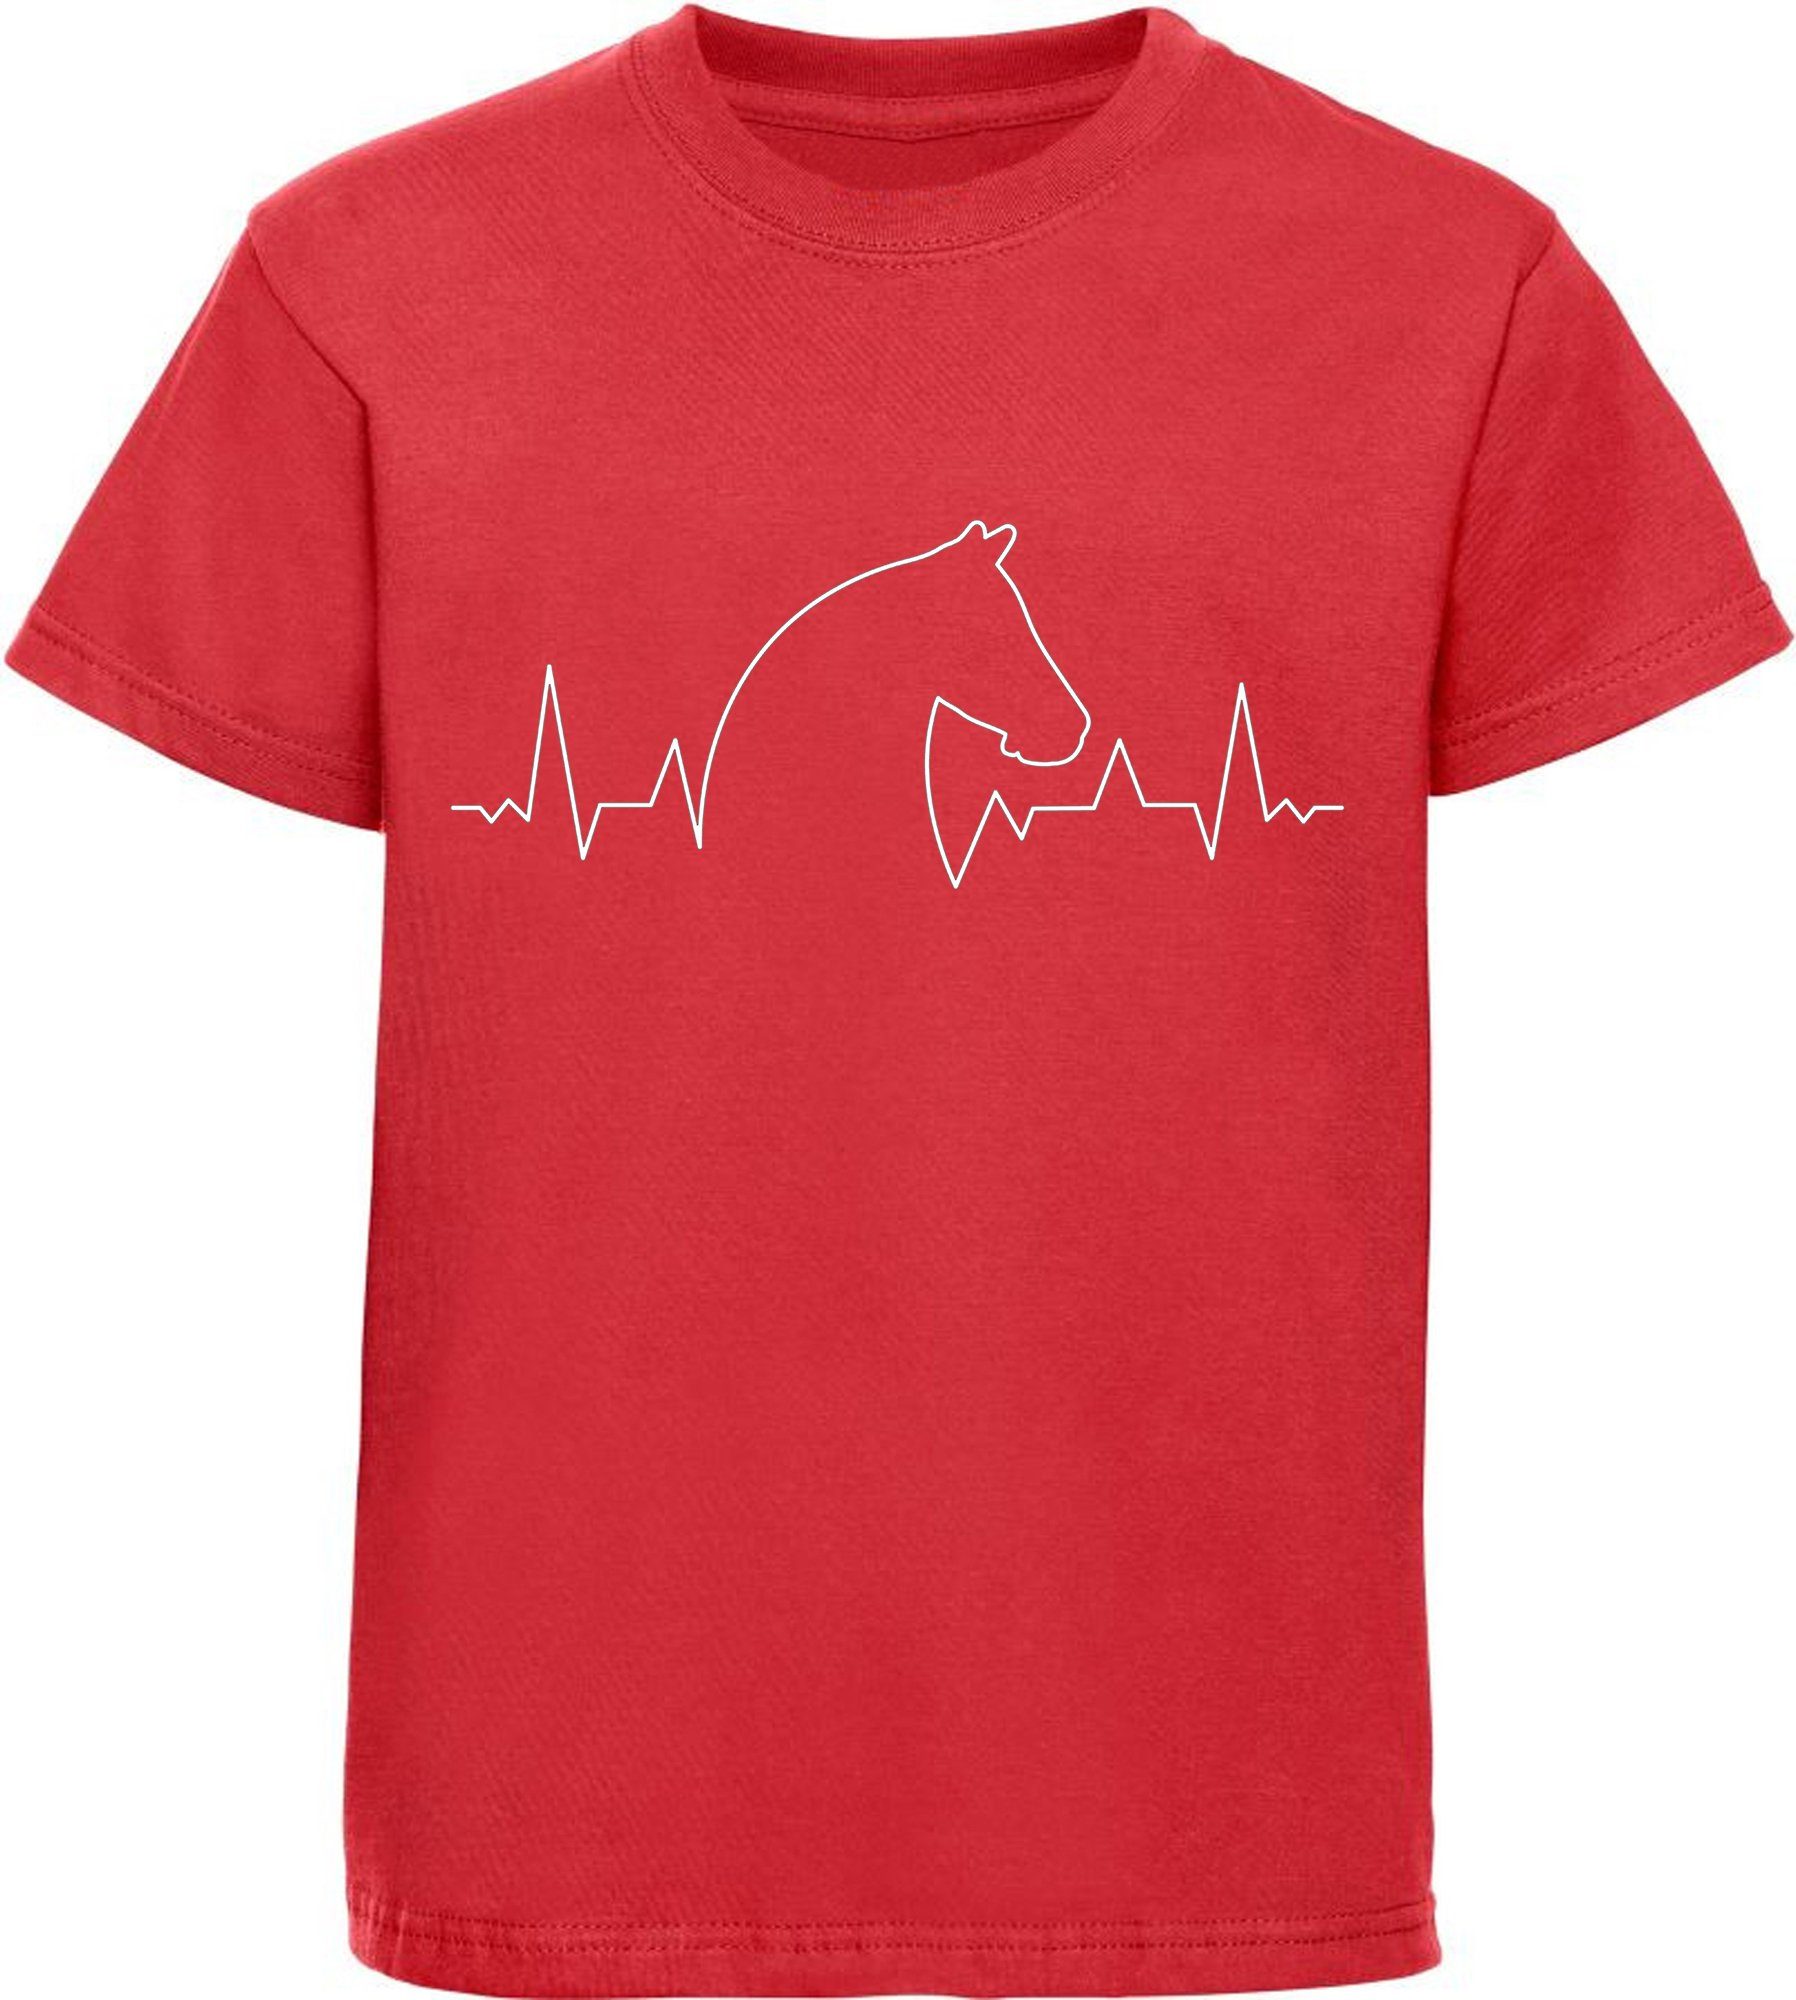 MyDesign24 Print-Shirt bedrucktes Kinder T-Shirt Herzschlaglinie mit Pferdekopf Baumwollshirt mit Aufdruck, i154 rot